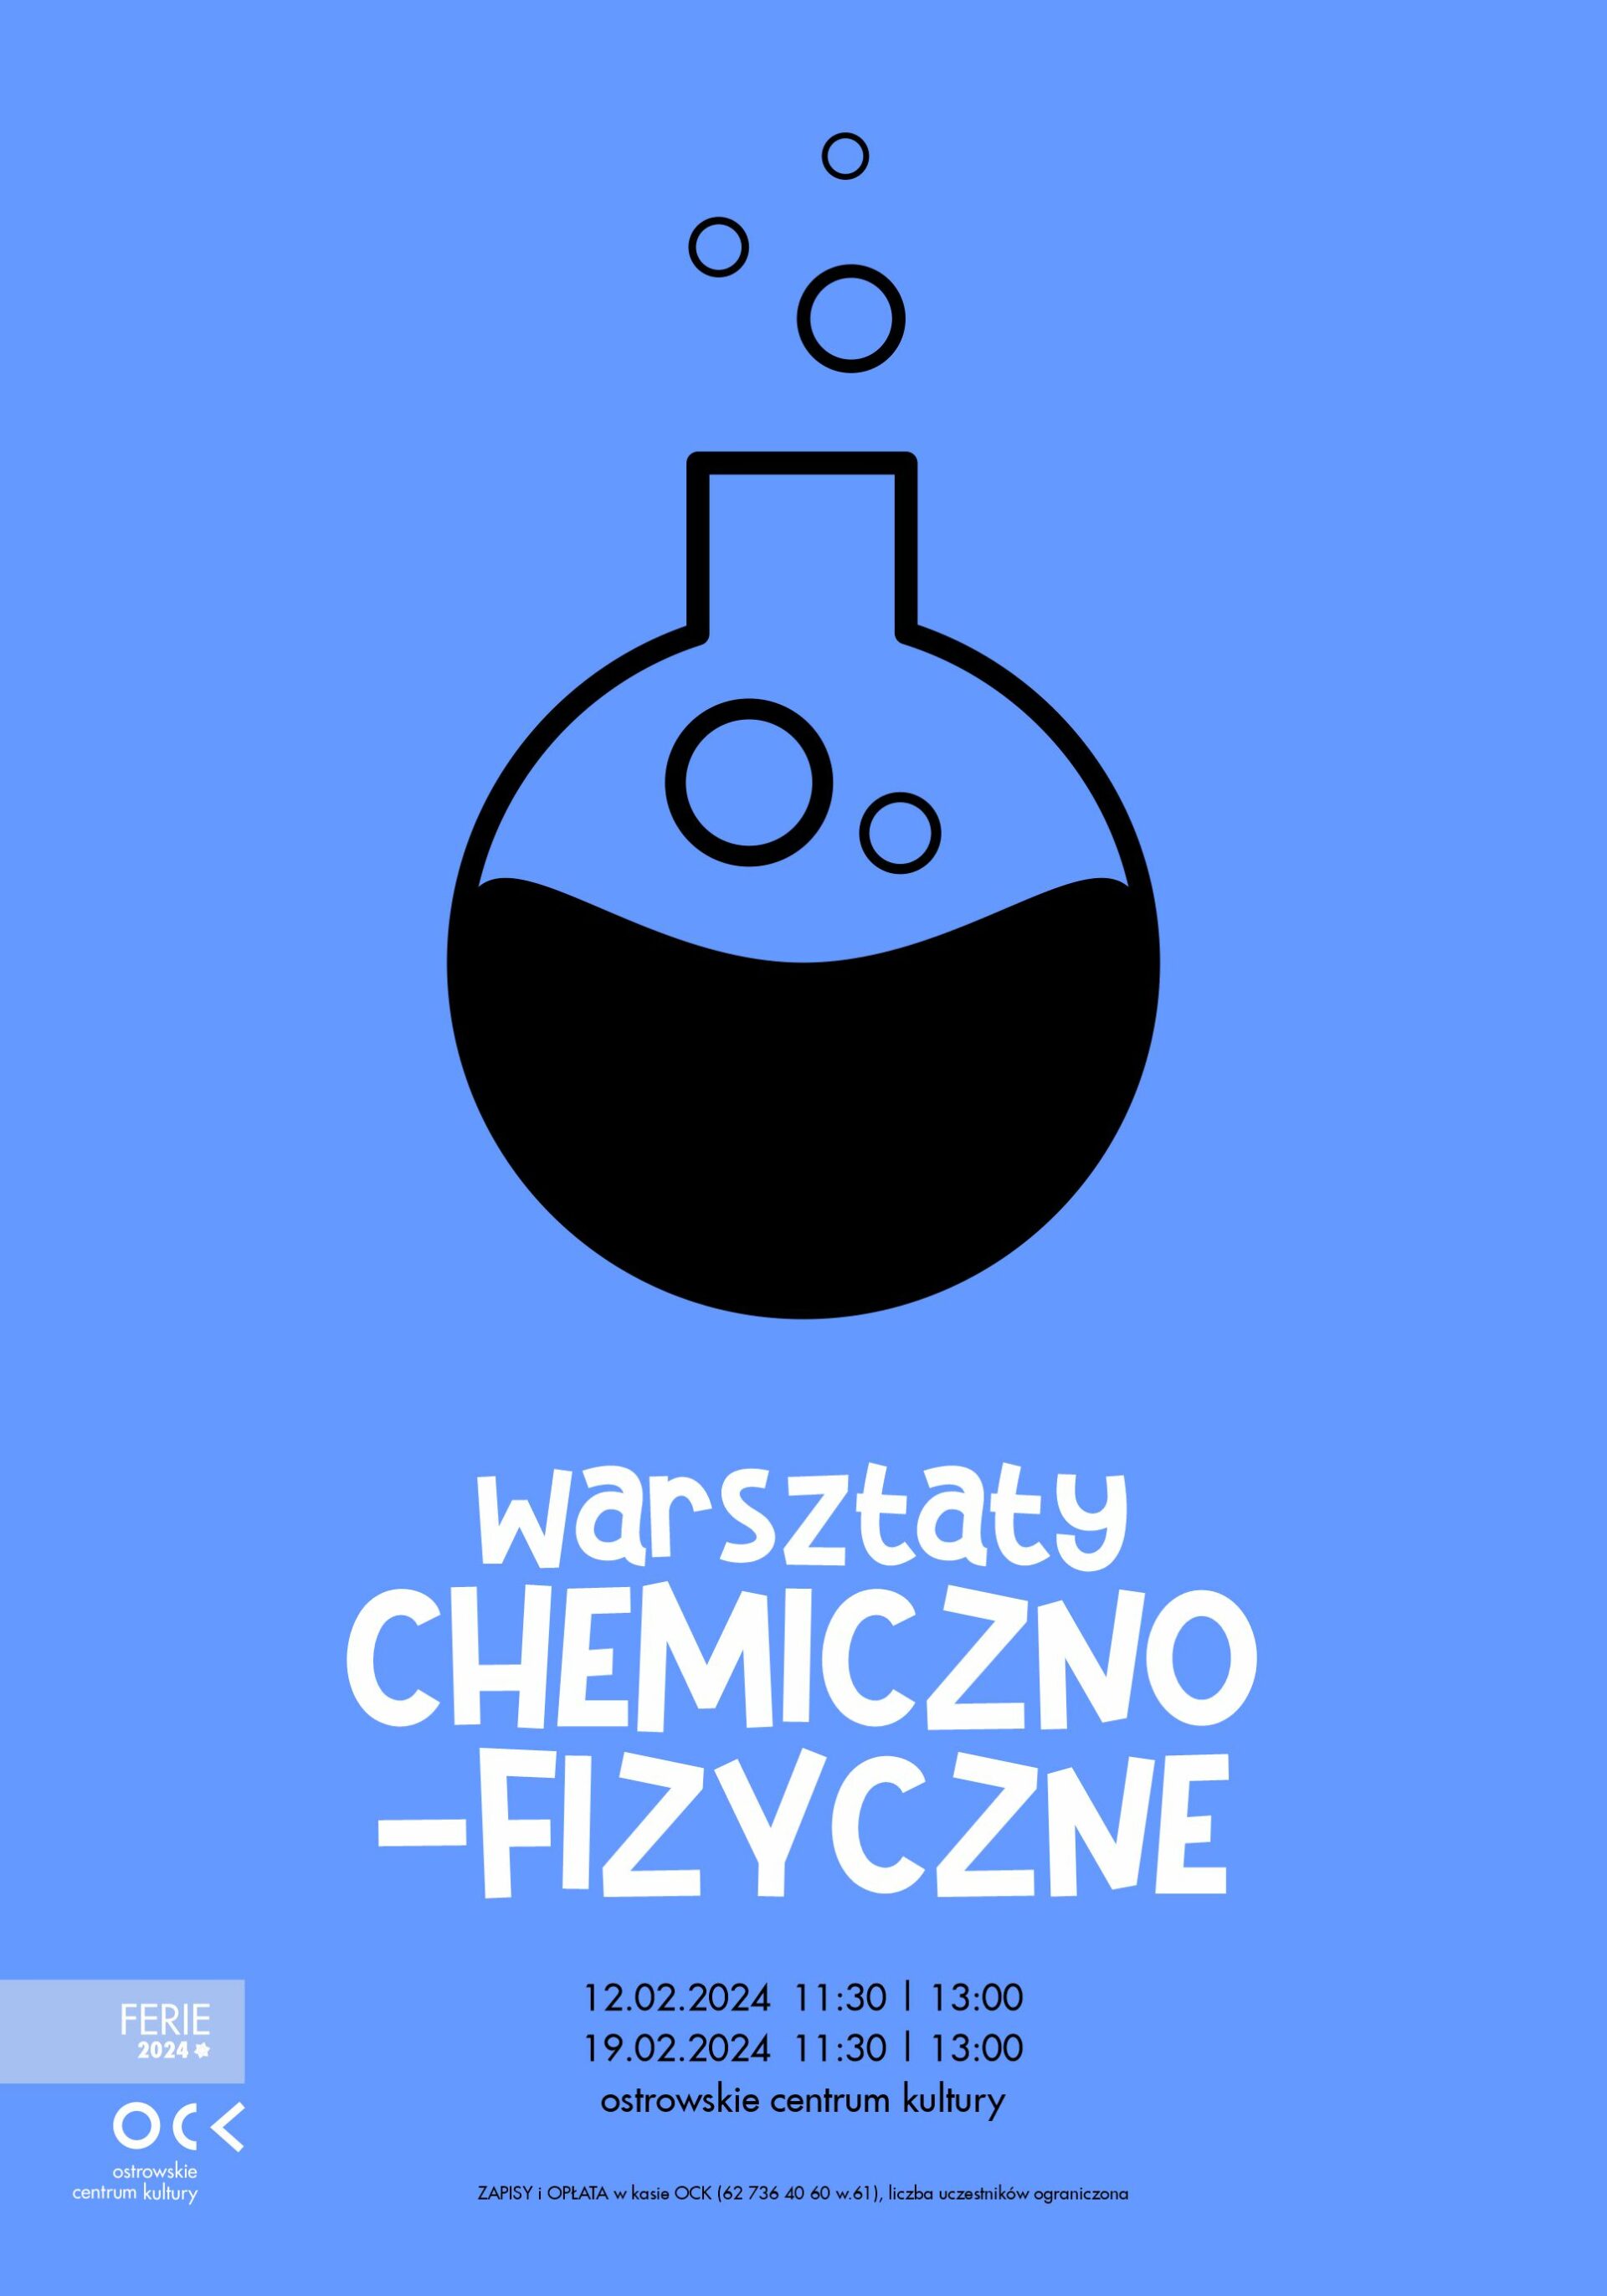 Ferie 2024 | Warsztaty CHEMICZNO-FIZYCZNE